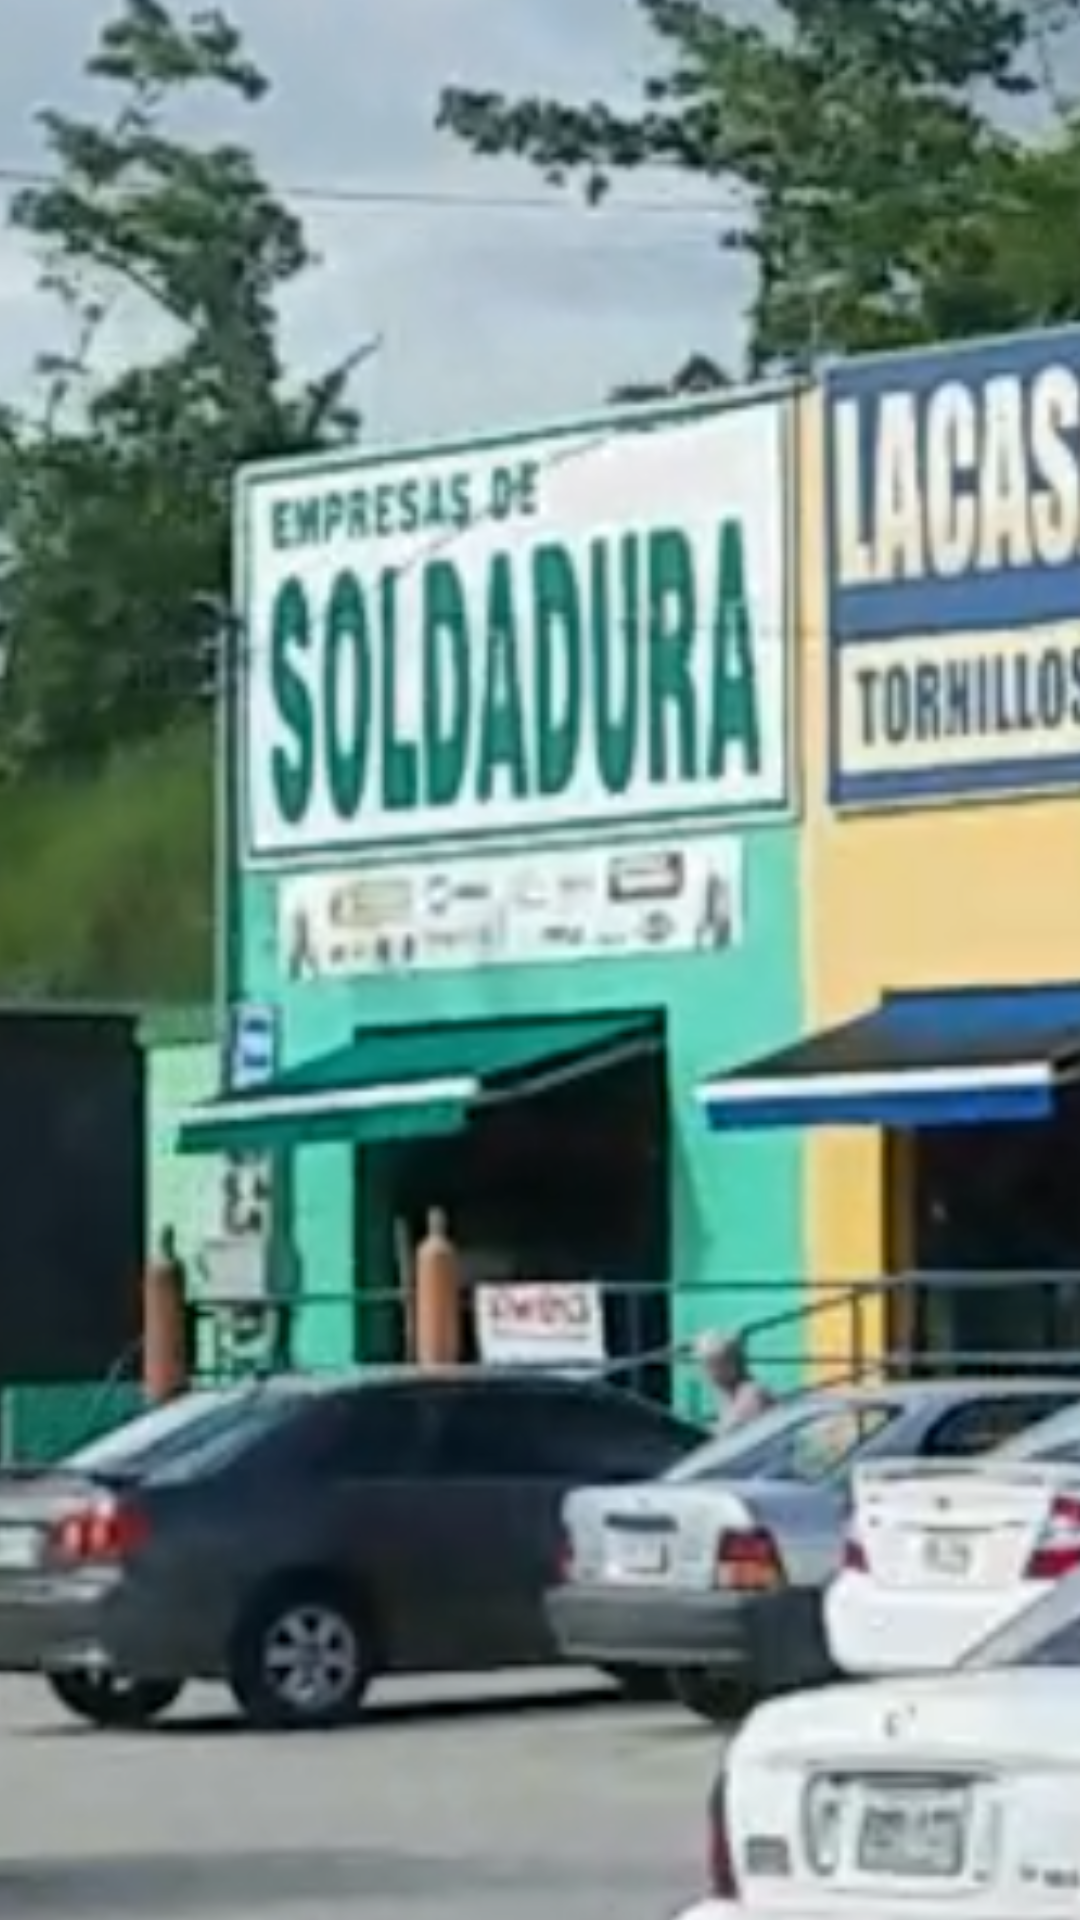 Empresas De Soldaduras (Hormigueros)